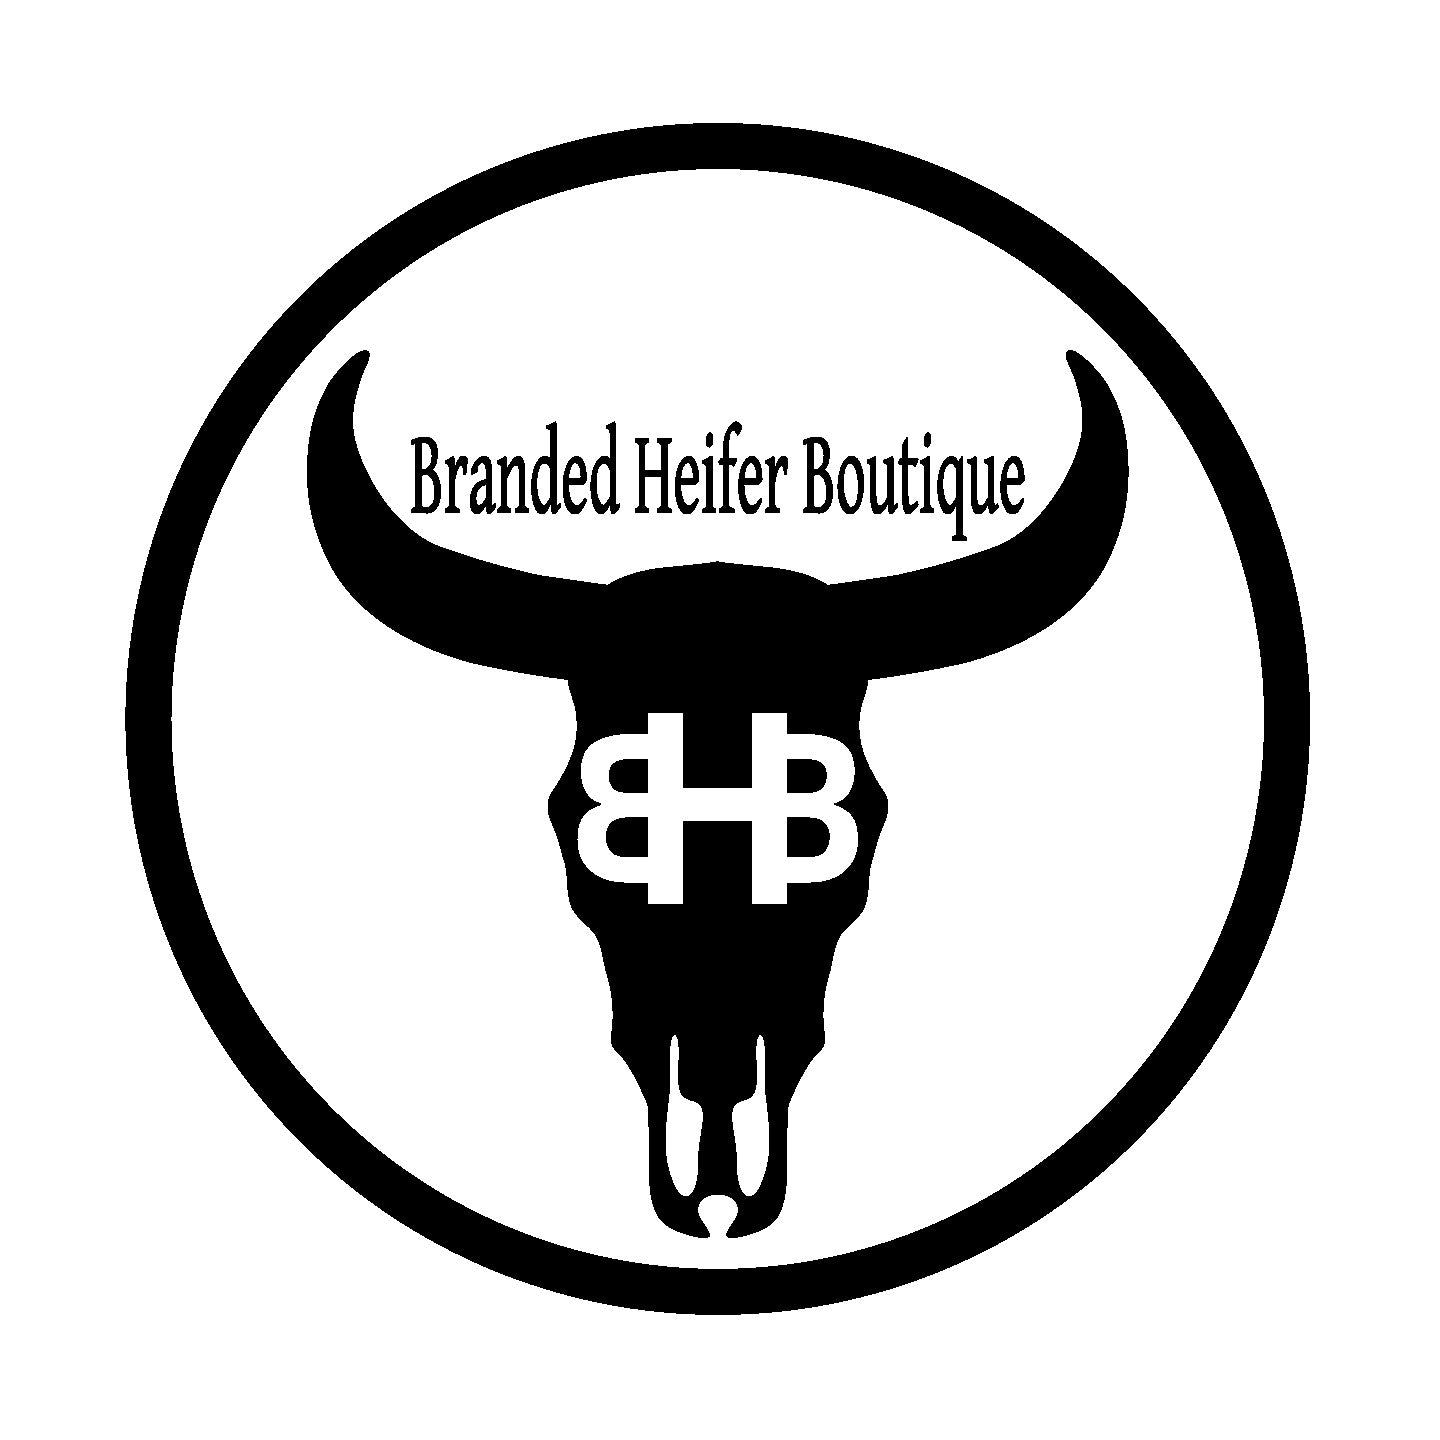 About Us – Branded Heifer Boutique LLC